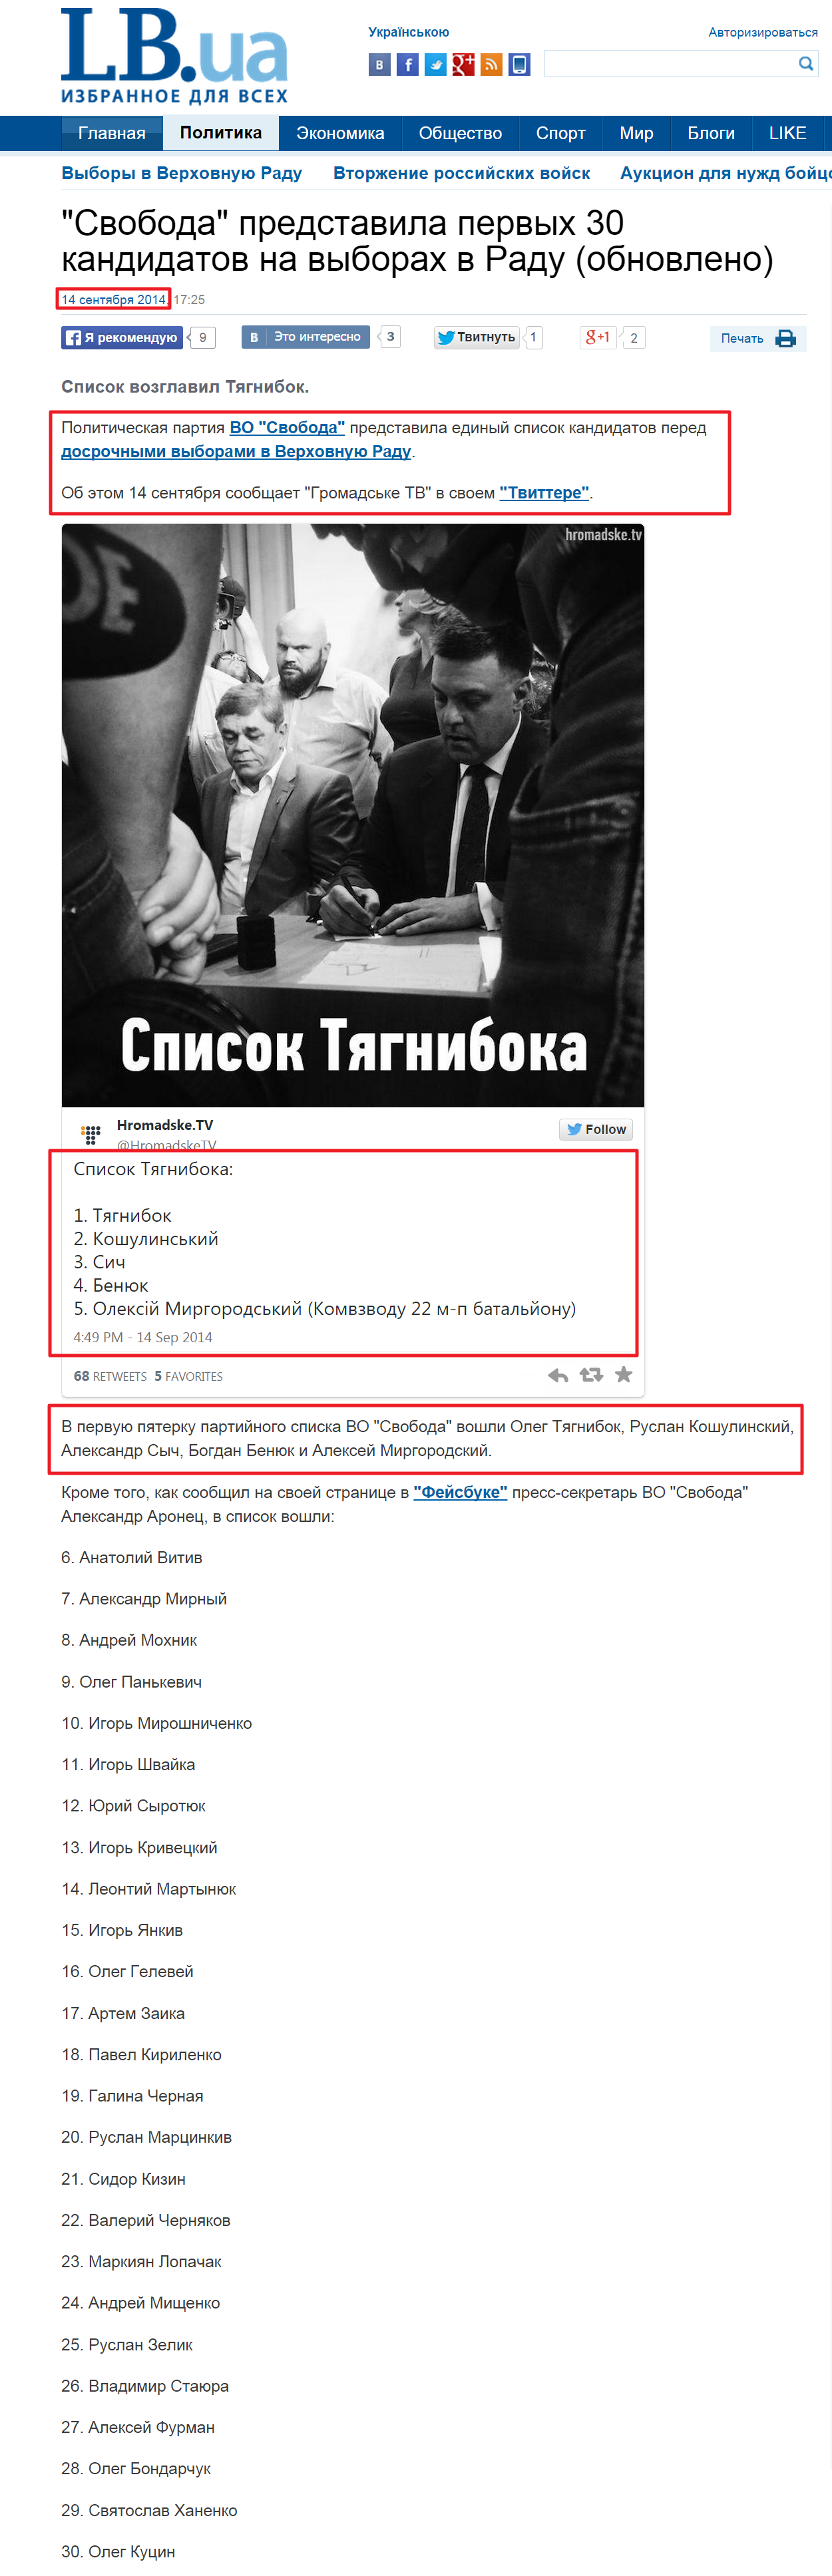 http://lb.ua/news/2014/09/14/279325_svoboda_nazvala_pervuyu.html